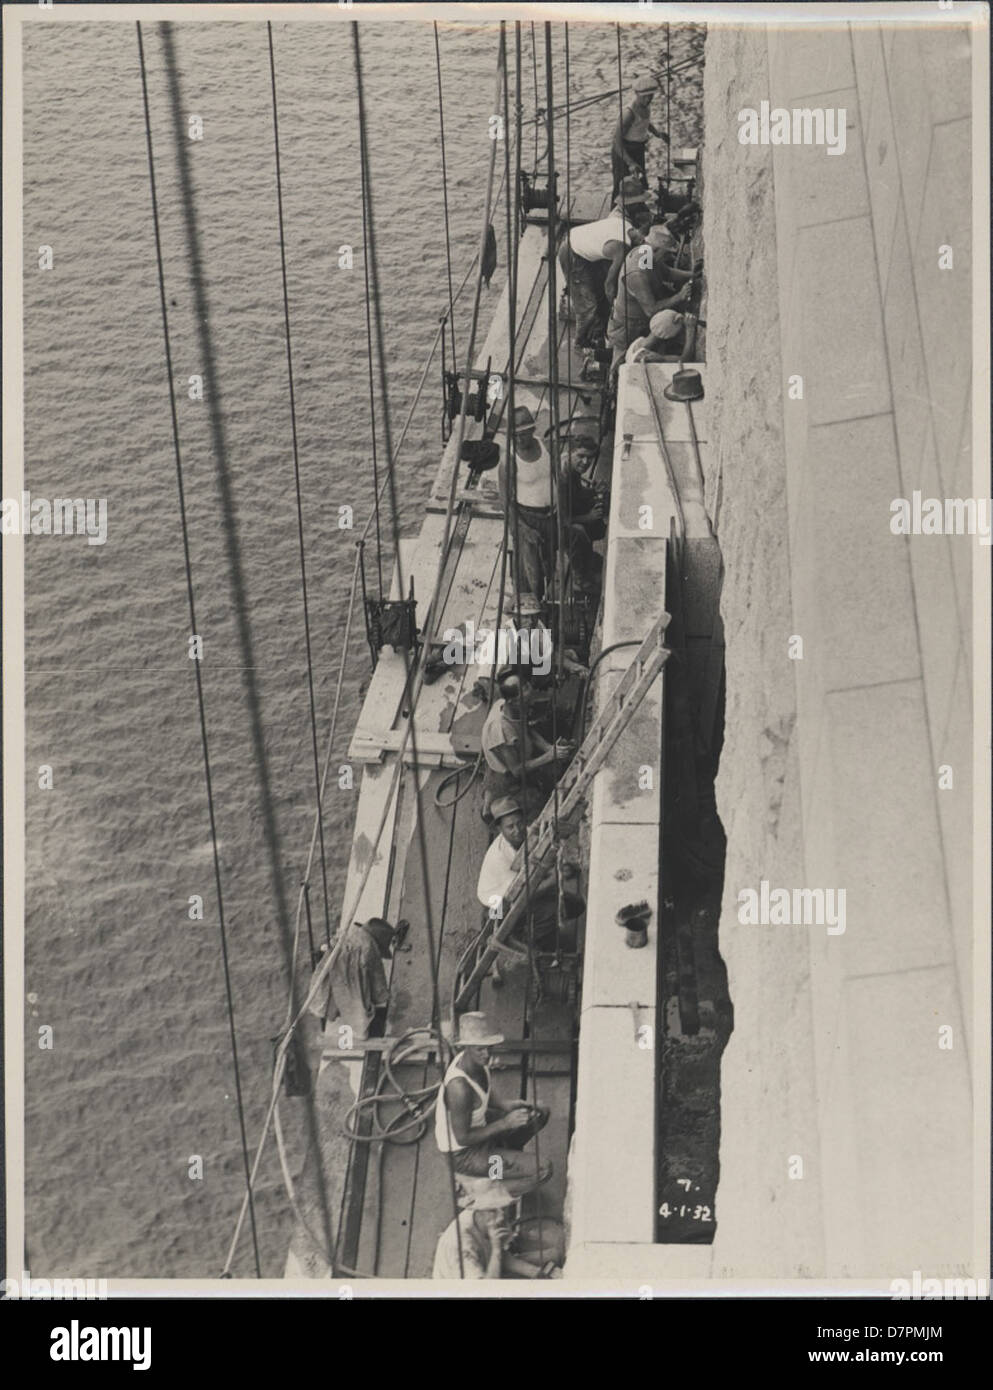 87/1353-104tirage photographique, le nettoyage des pylônes de granit sur le Pont du Port de Sydney, argent / gélatine / papier, photographie de la Nouvelle Galles du sud Ministère des Travaux publics, Sydney, Australie, Janvier, 1932 Banque D'Images